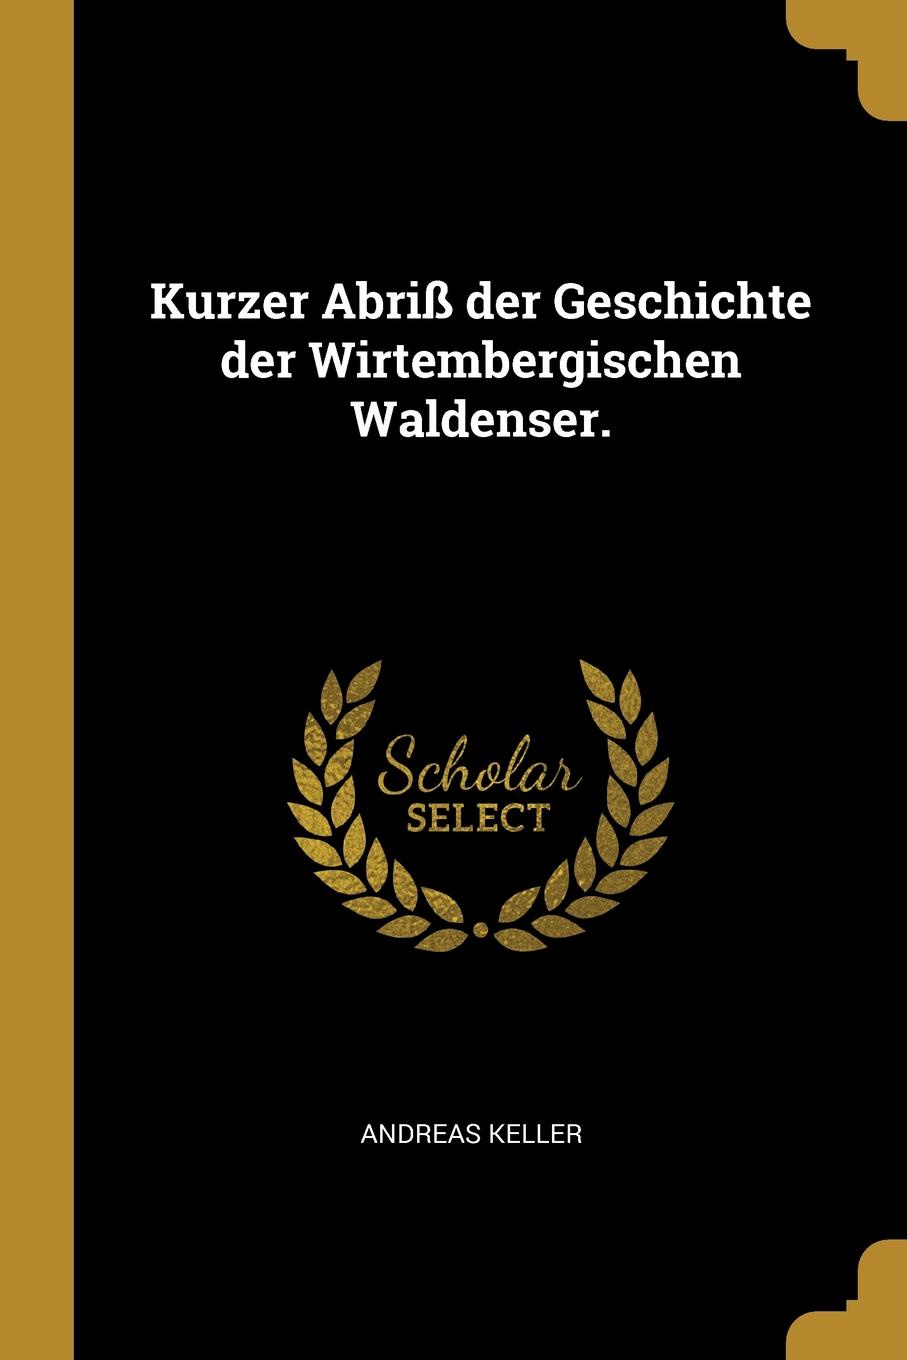 Kurzer Abriss der Geschichte der Wirtembergischen Waldenser.